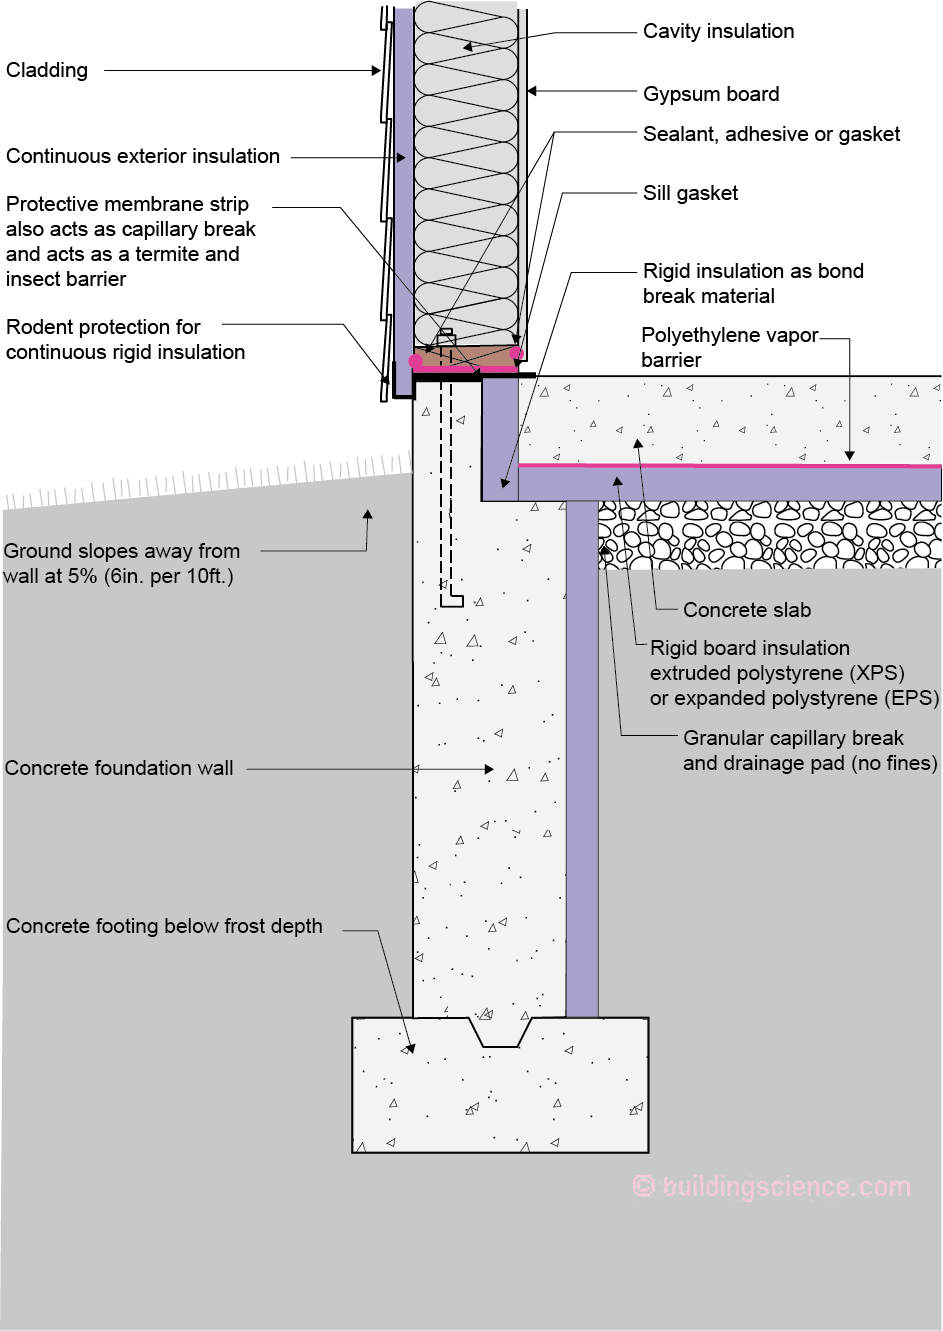 BSI-118: Concrete Solutions | buildingscience.com